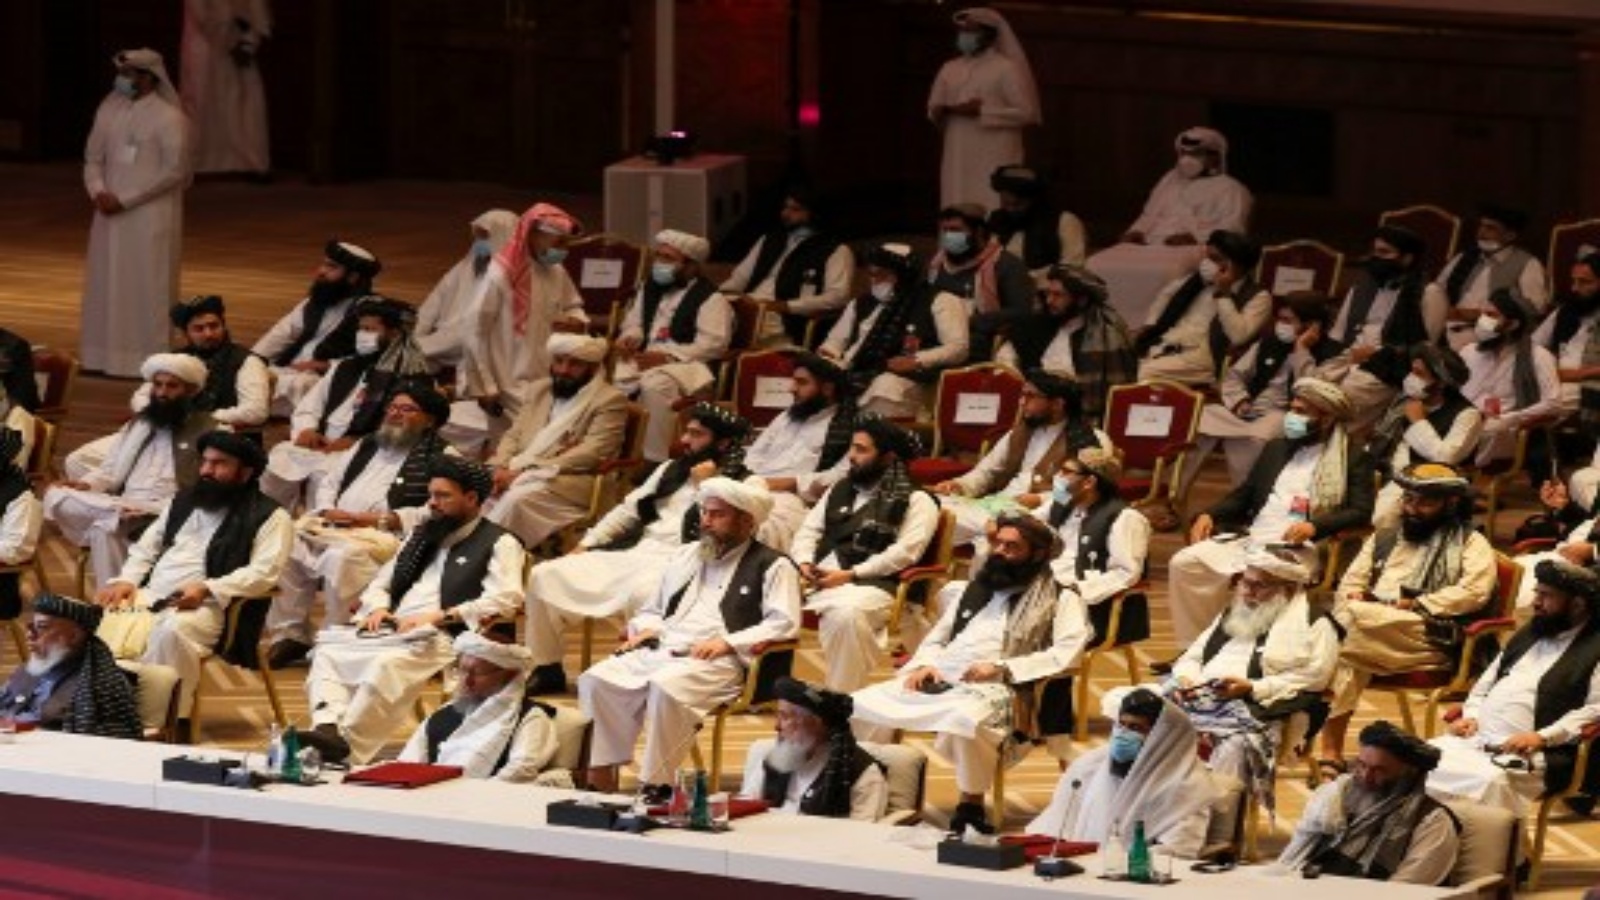 أعضاء وفد طالبان يحضرون الجلسة الافتتاحية لمحادثات السلام بين الحكومة الأفغانية وطالبان في العاصمة القطرية الدوحة في 12 سبتمبر 2020